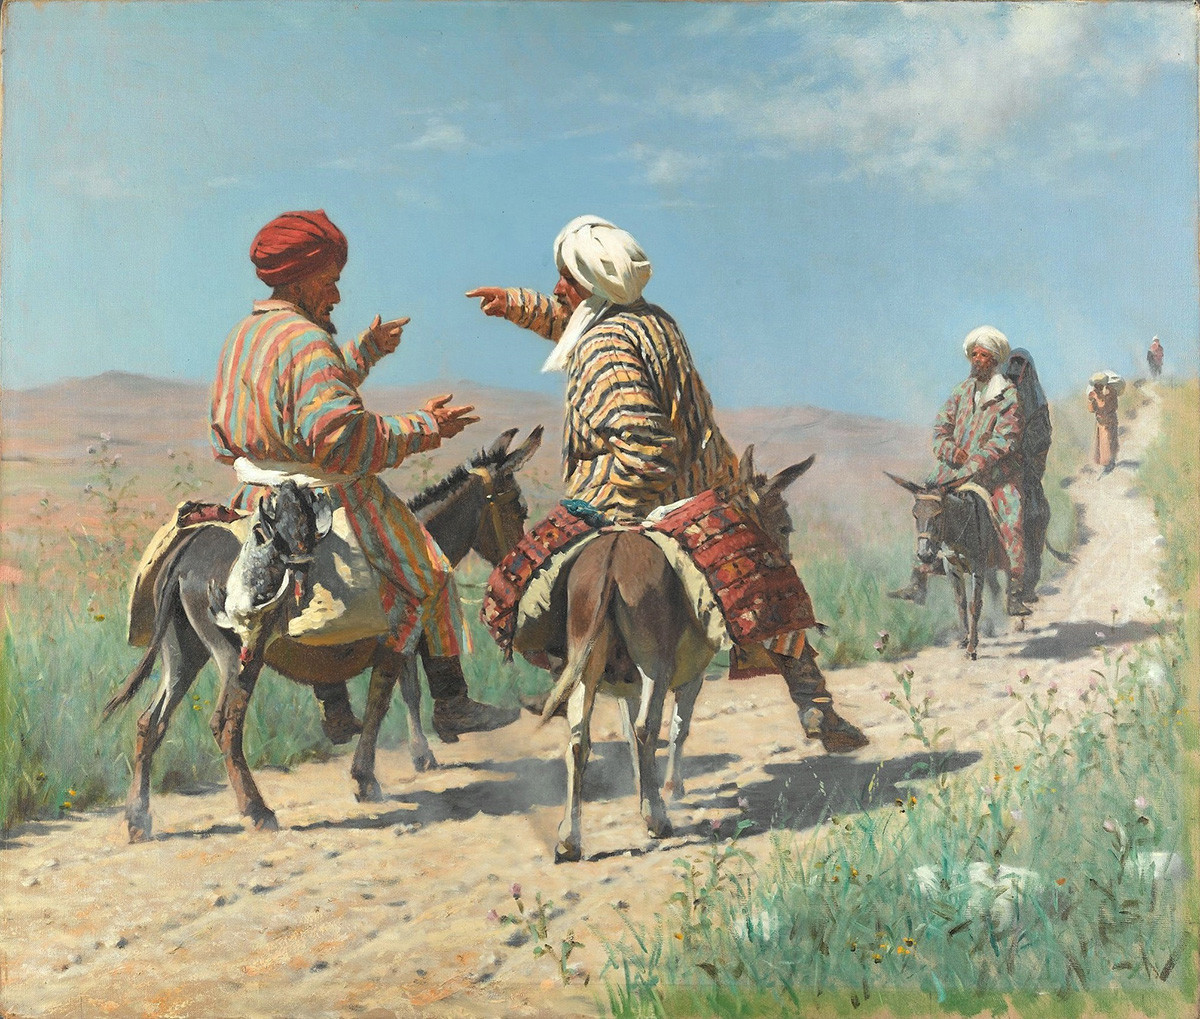 Le mollah Rahim et le mollah Kerim en route pour le bazar se querellent, 1873